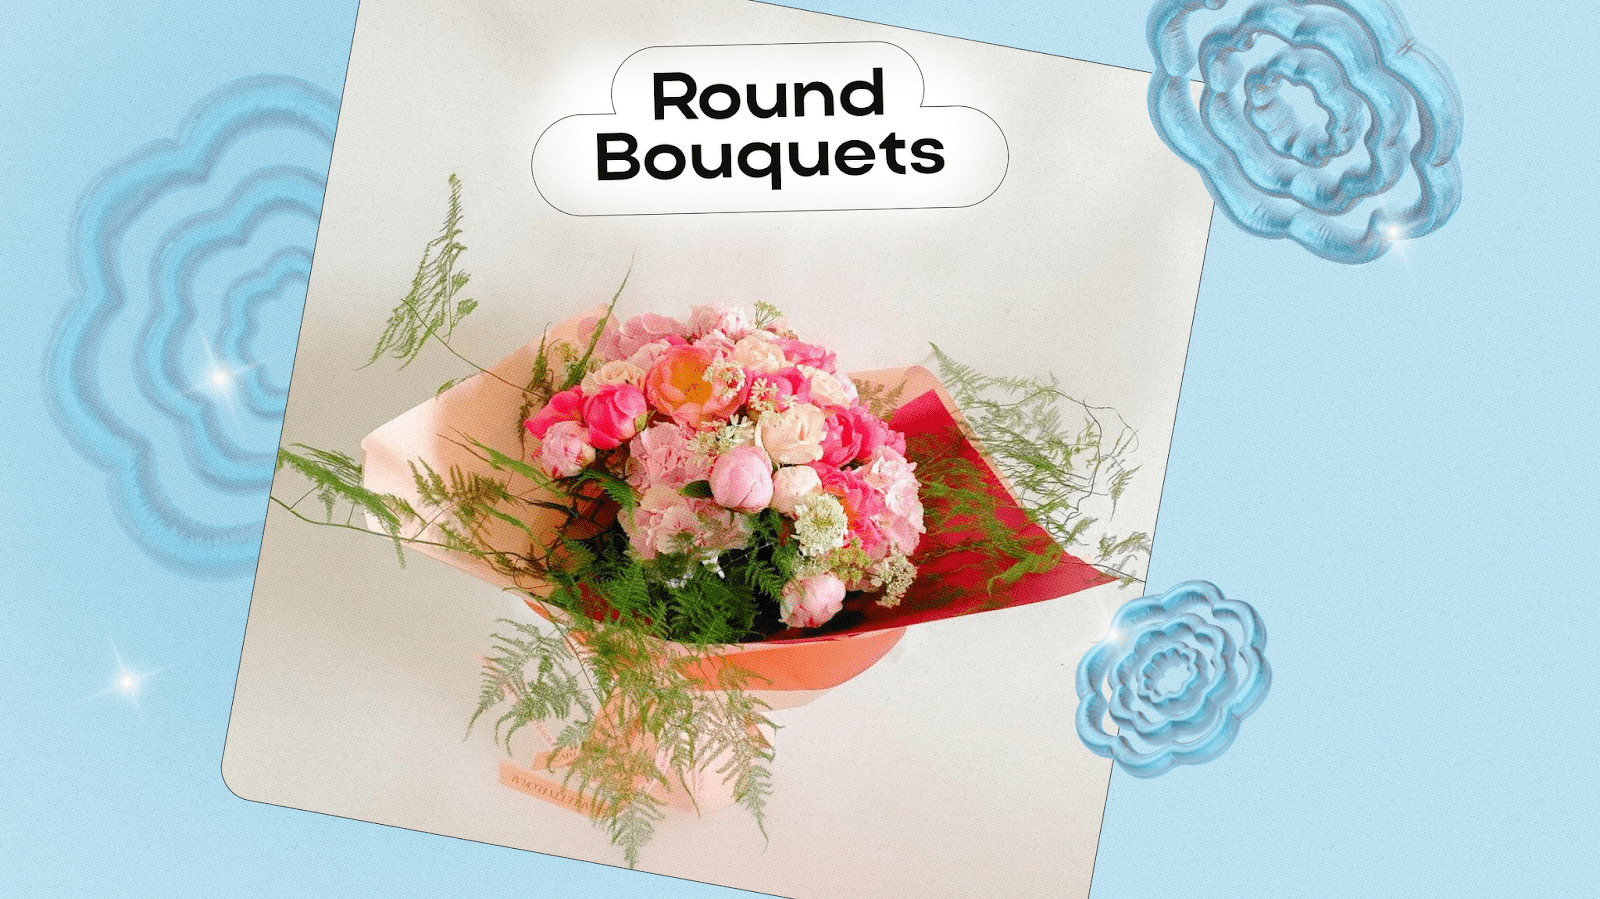 Round Bouquets